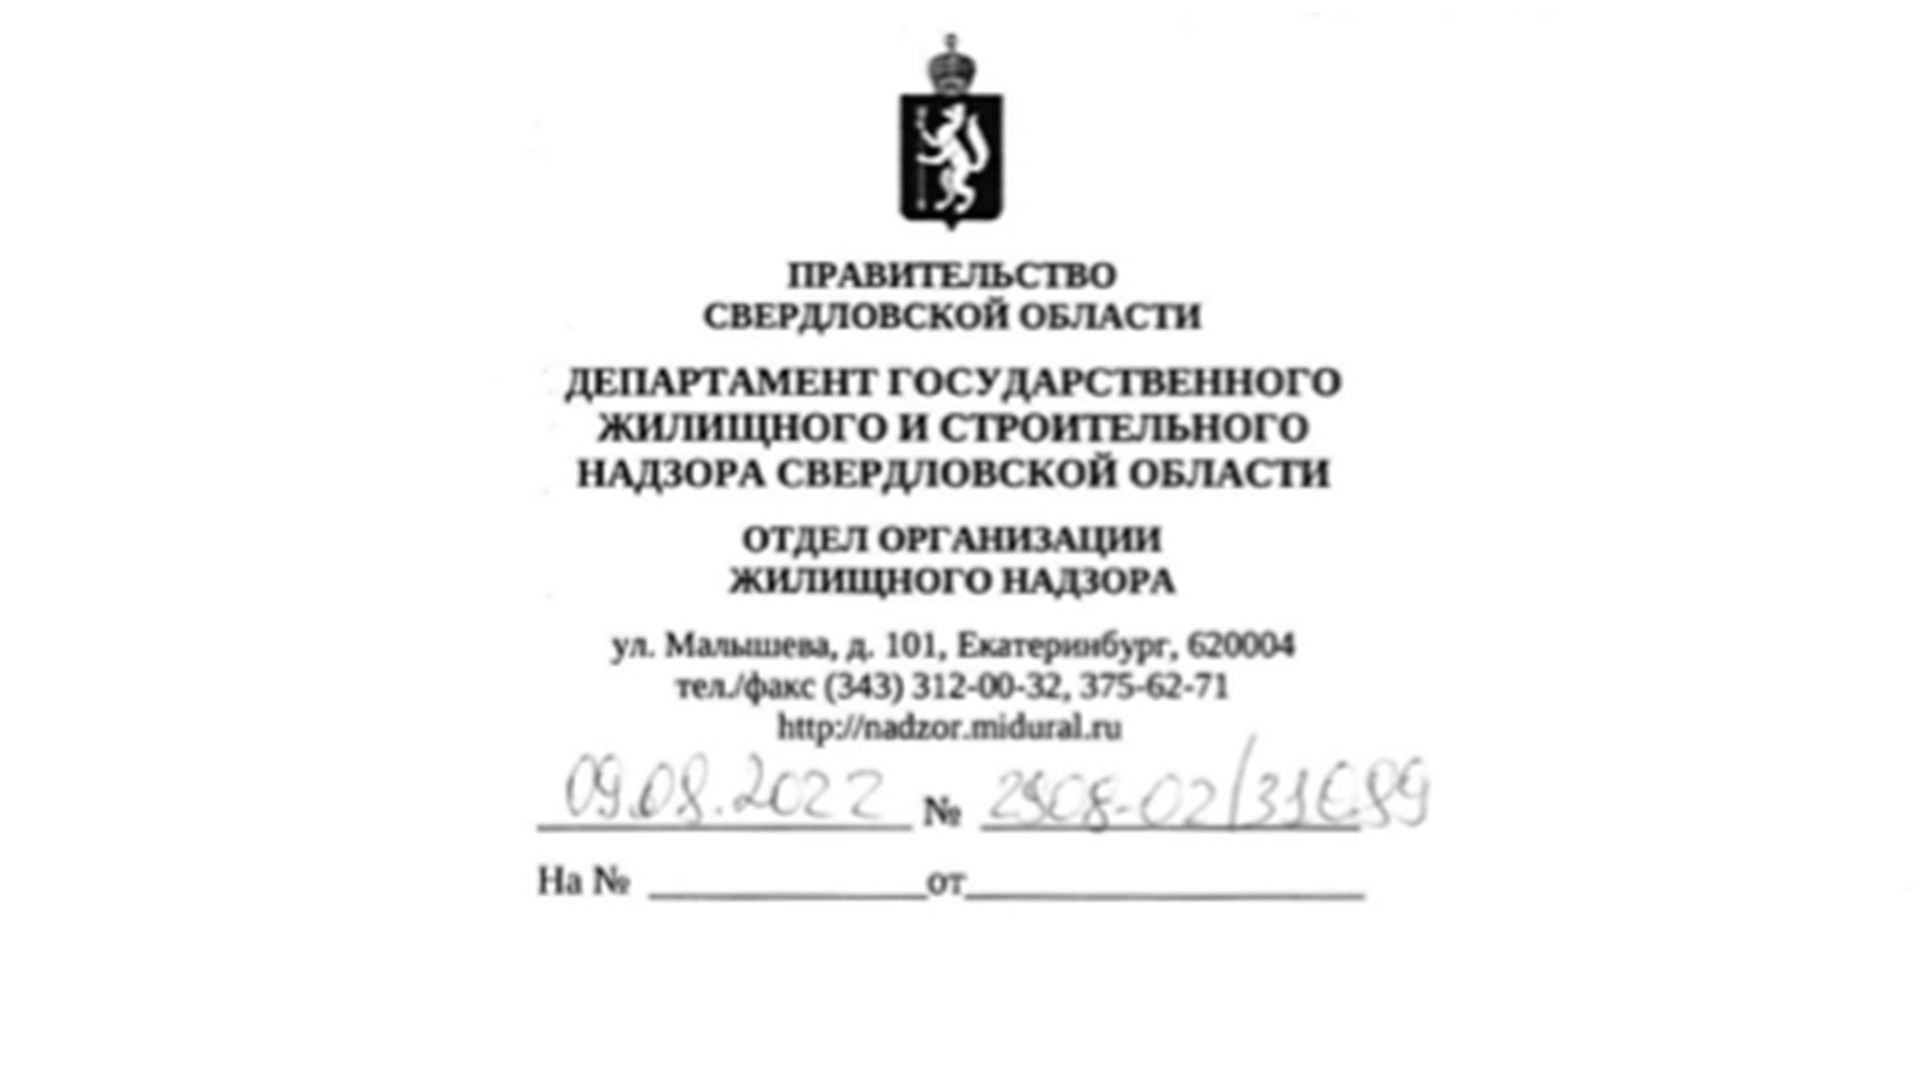 Ответ Департамент государственного жилищного и строительного надзора Свердловской области